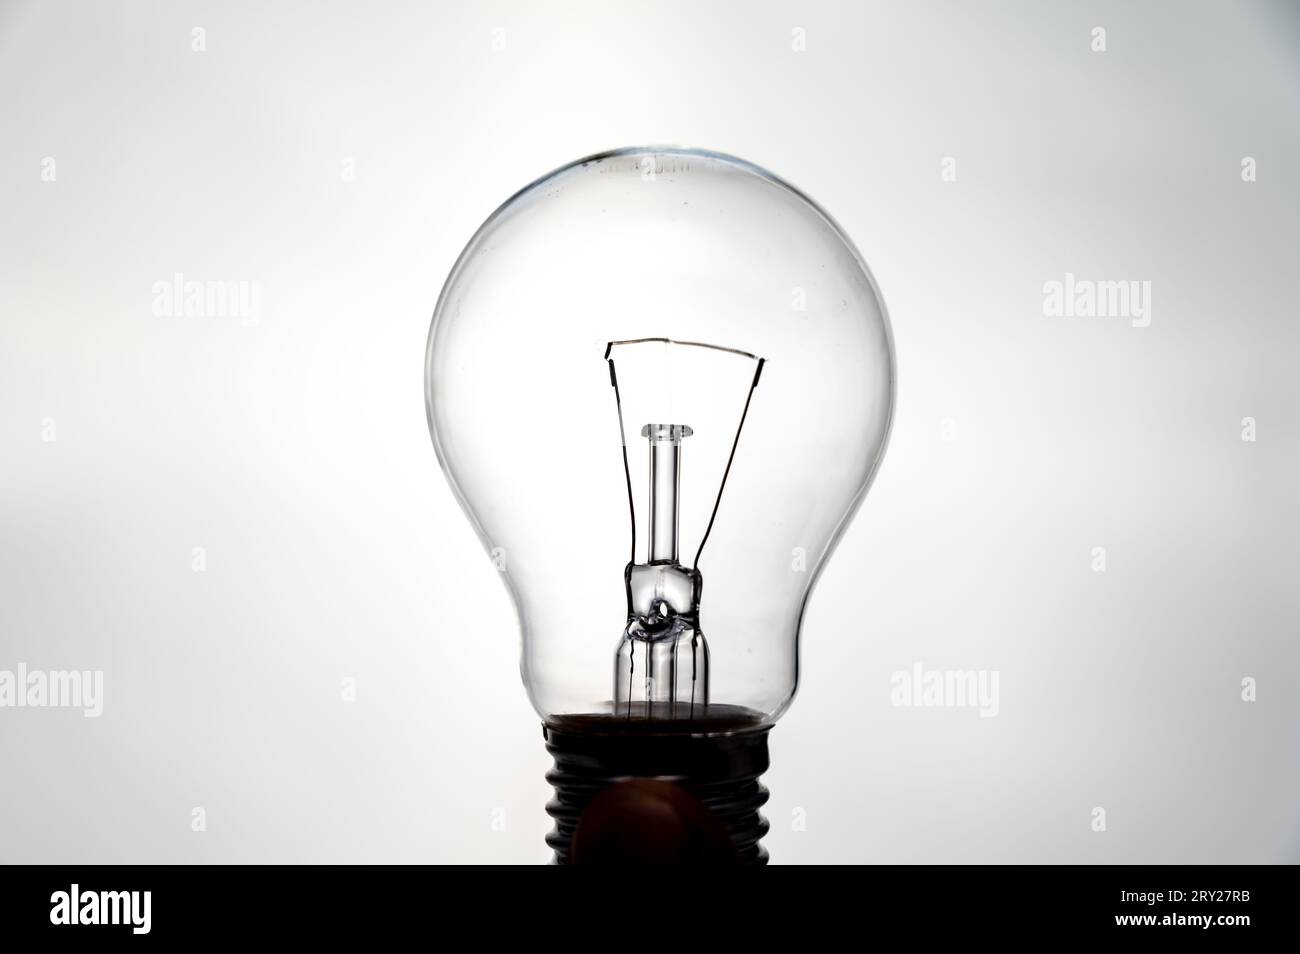 Ampoule incandescente, photographiée contre la lumière, qui semble allumée. Électricité et sources d'énergie renouvelables. Banque D'Images